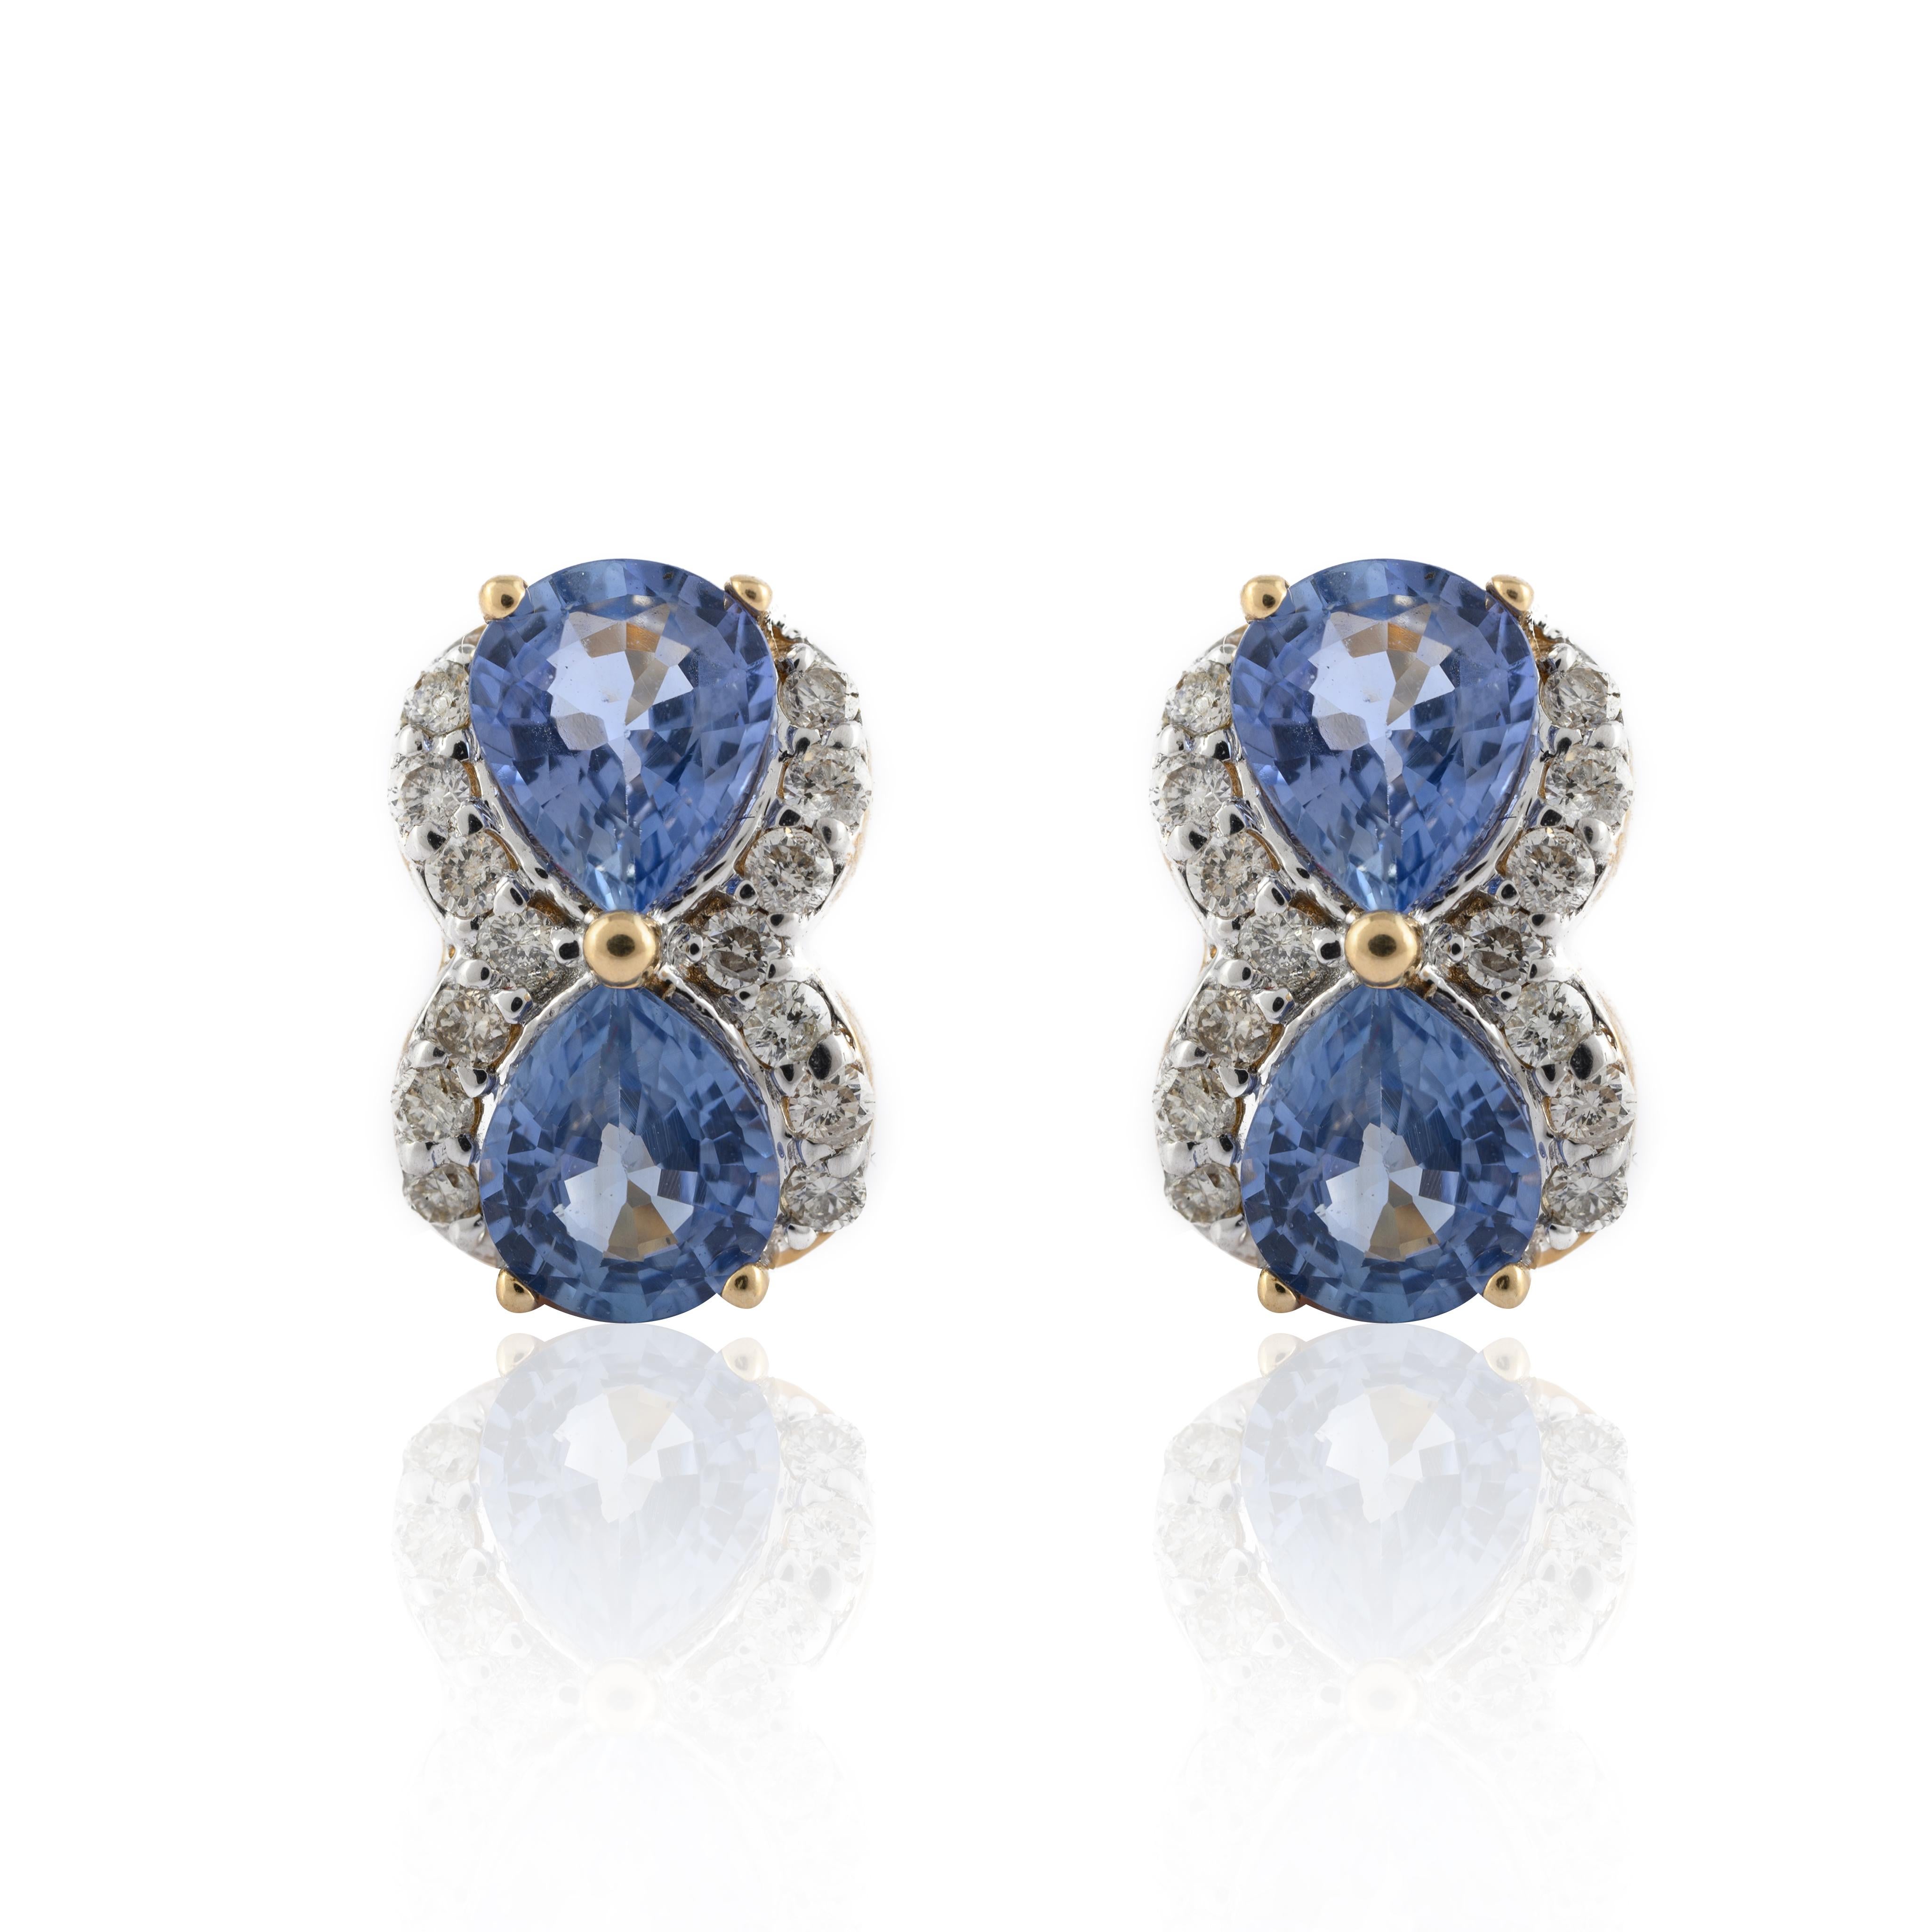 Boucles d'oreilles en or 14 carats composées de diamants naturels et de saphirs bleus. Embrassez votre look avec cette superbe paire de boucles d'oreilles qui convient à toutes les occasions pour compléter votre tenue.
Le saphir stimule la